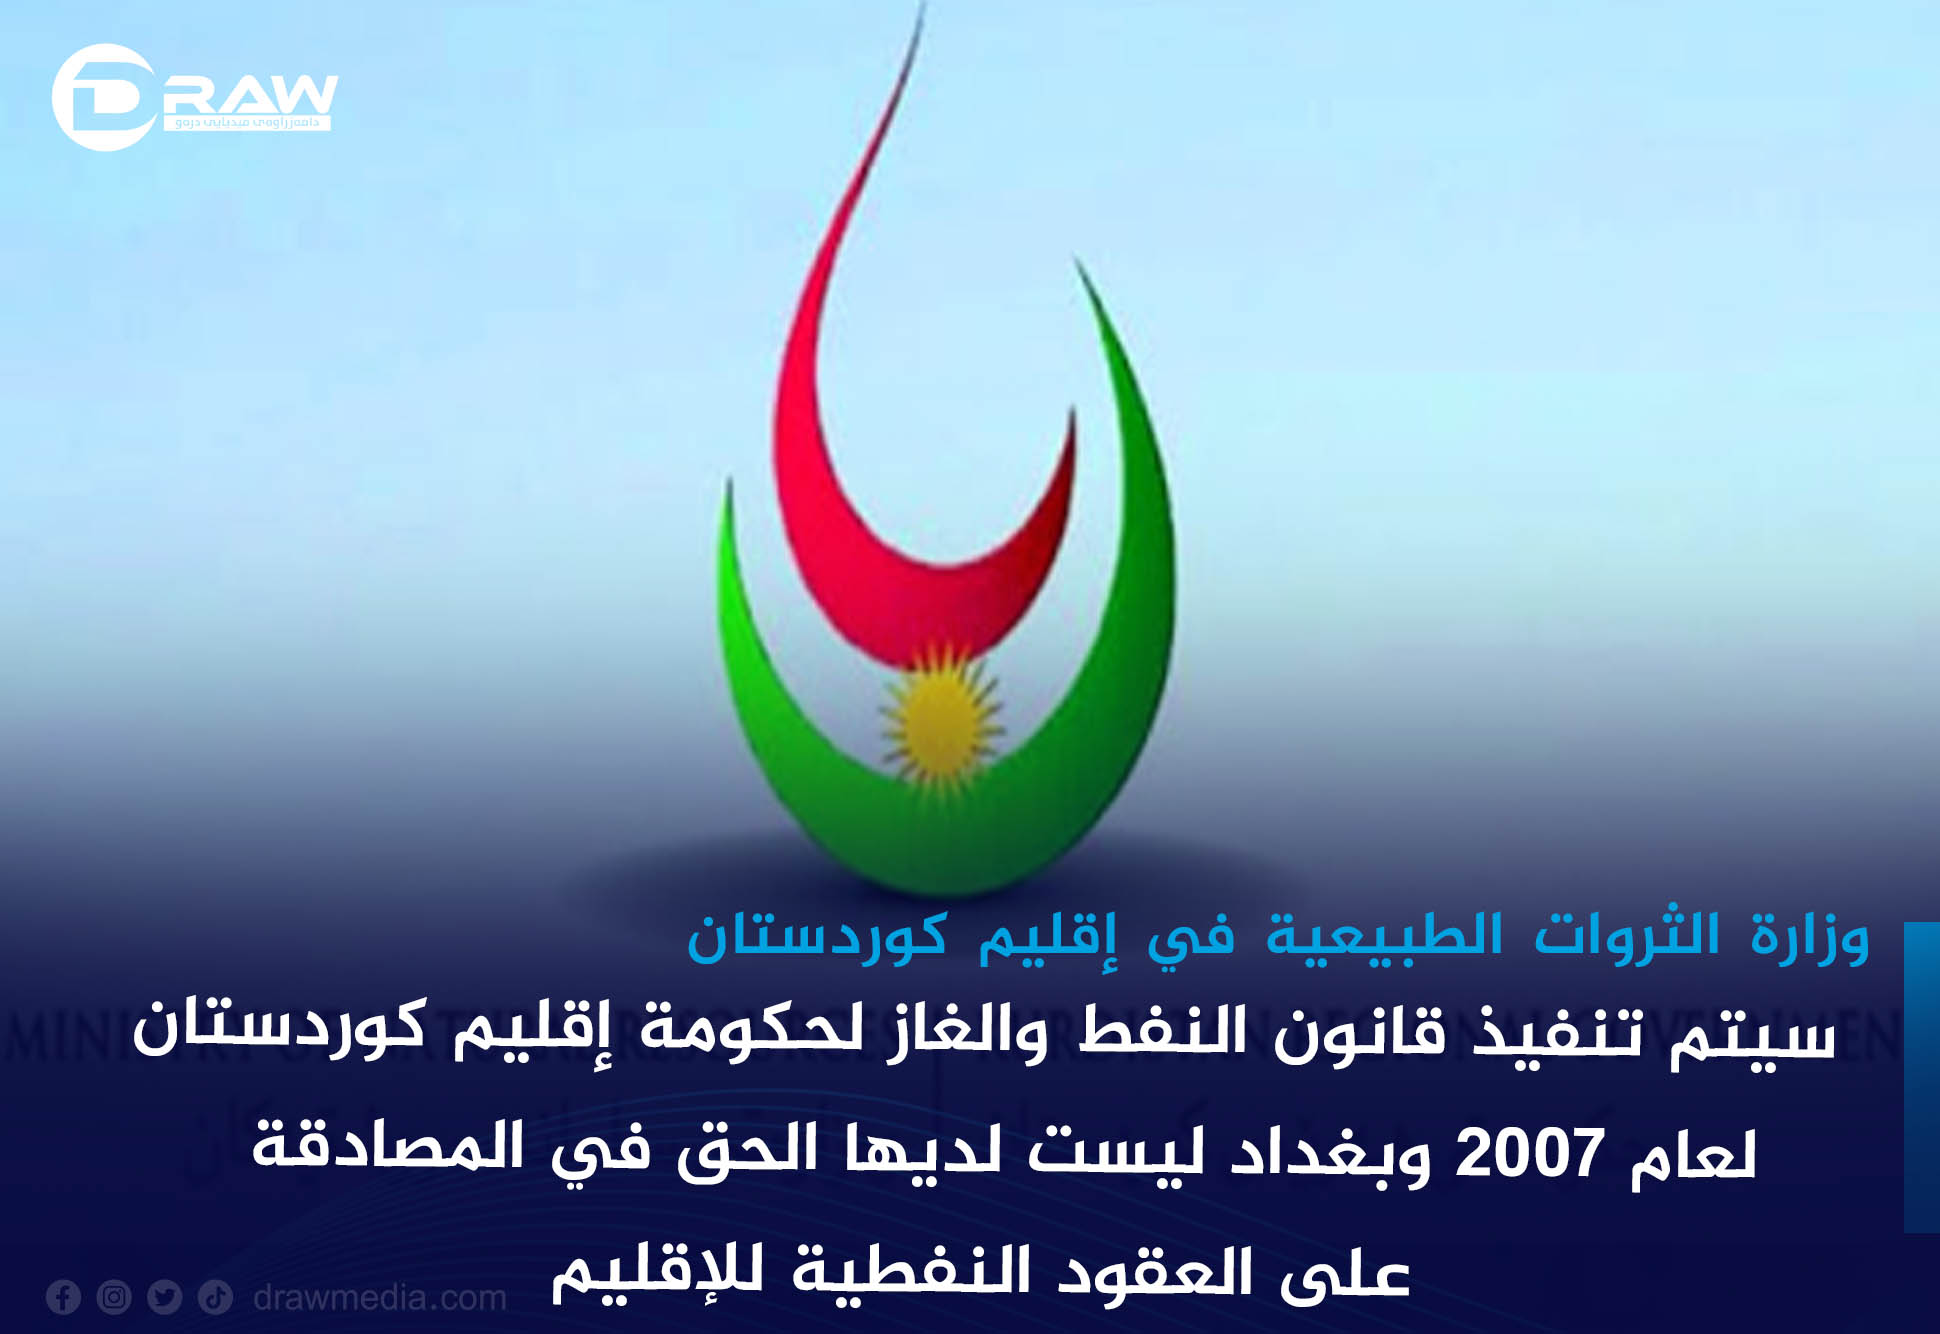 DrawMedia.net / سيتم تنفيذ قانون النفط والغاز لحكومة إقليم كوردستان لعام 2007 وبغداد ليست لديها الحق في المصادقة على العقود النفطية للإقليم